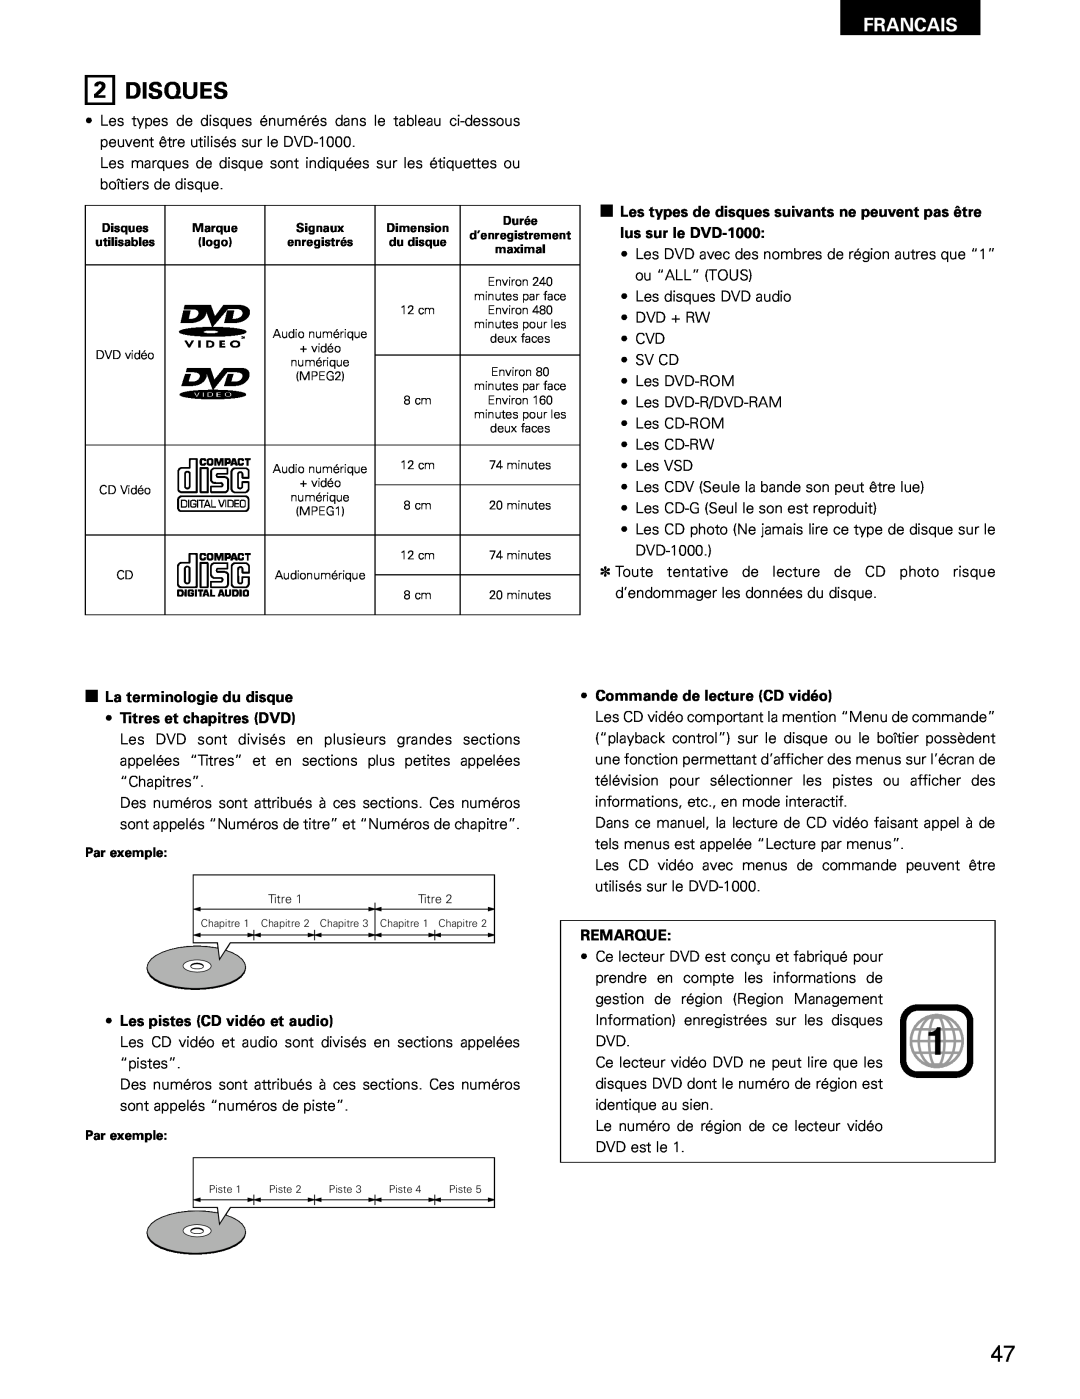 Denon DVD-1000 manual Disques, Francais, La terminologie du disque Titres et chapitres DVD, Les pistes CD vidéo et audio 